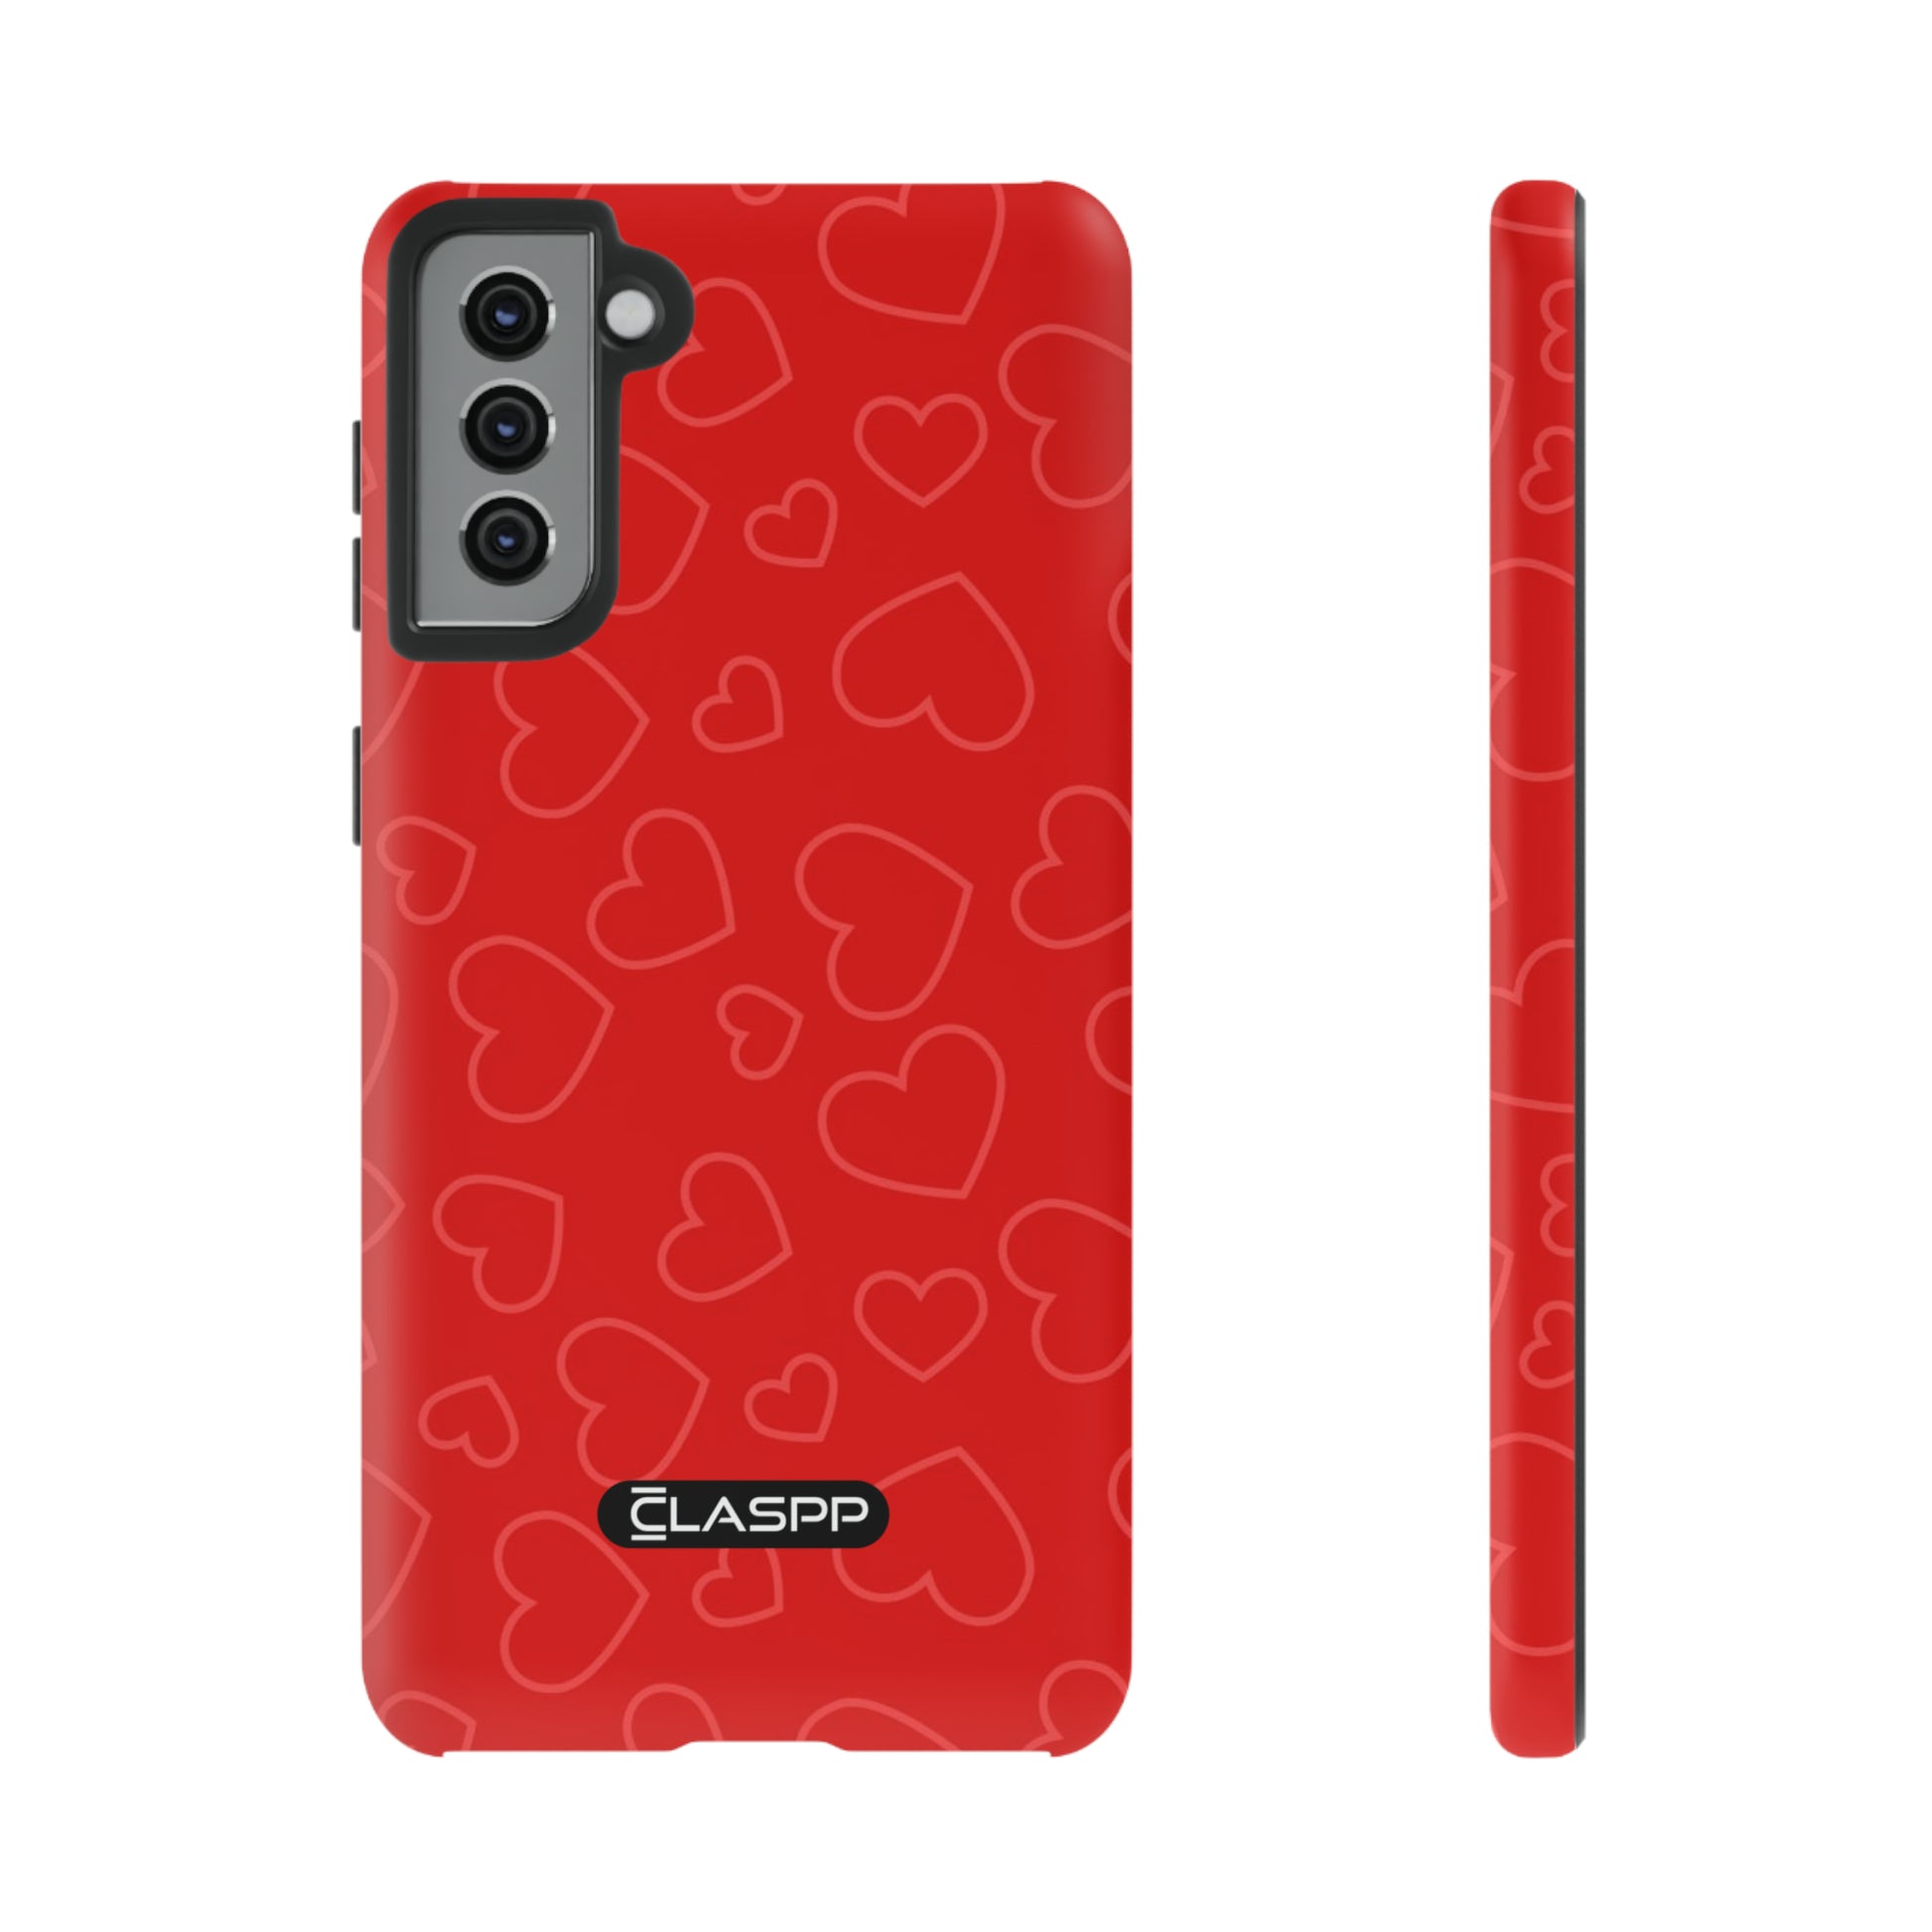 Samsung Galaxy S21 plus Valentine's Day phone case